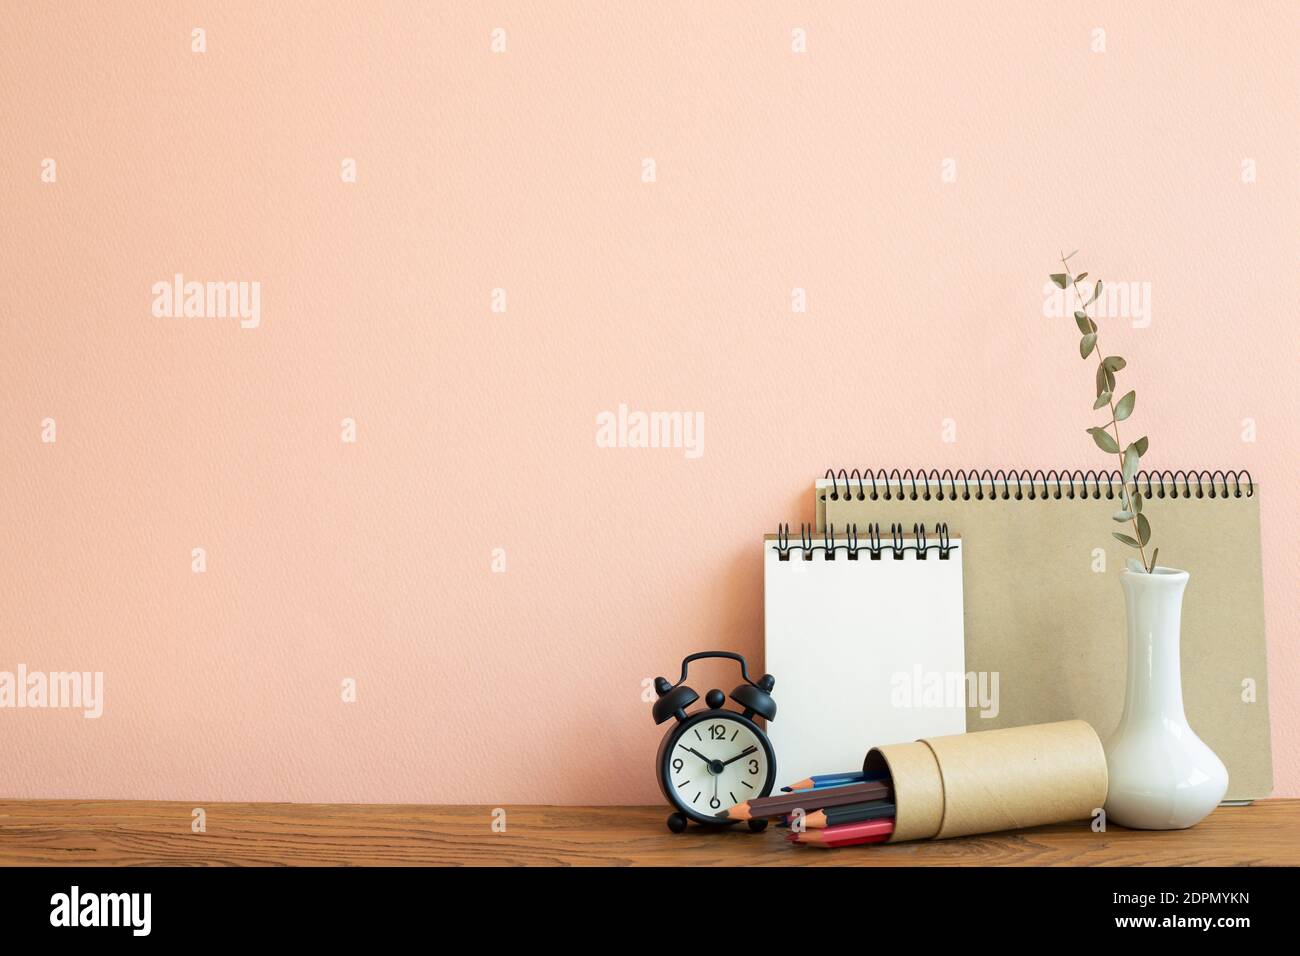 Carnet, horloge, crayons avec vase d'eucalyptus sur table en bois. Fond rose. Lieu de travail et d'étude Banque D'Images